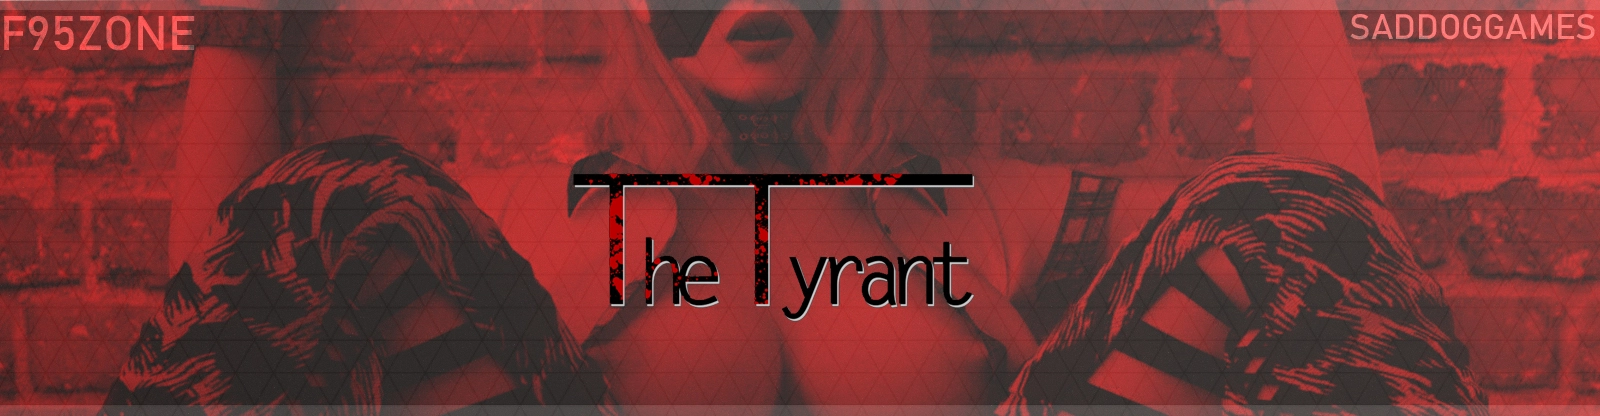 The Tyrant [v0.9] main image